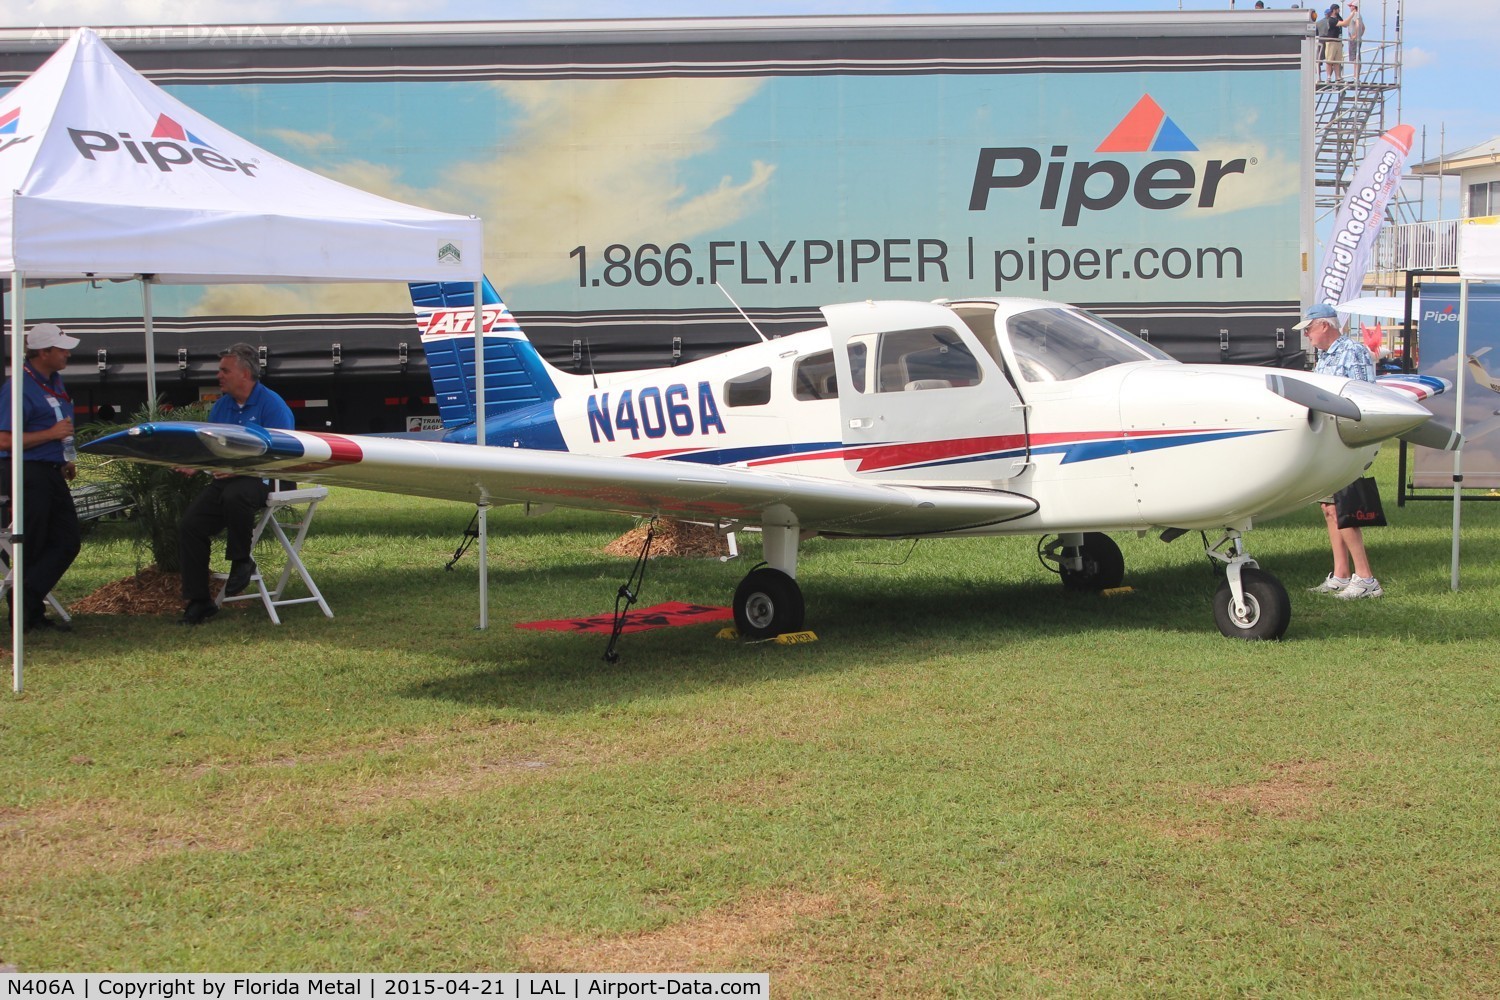 N406A, 2013 Piper PA-28-181 Archer III C/N 2843739, PA-28-181